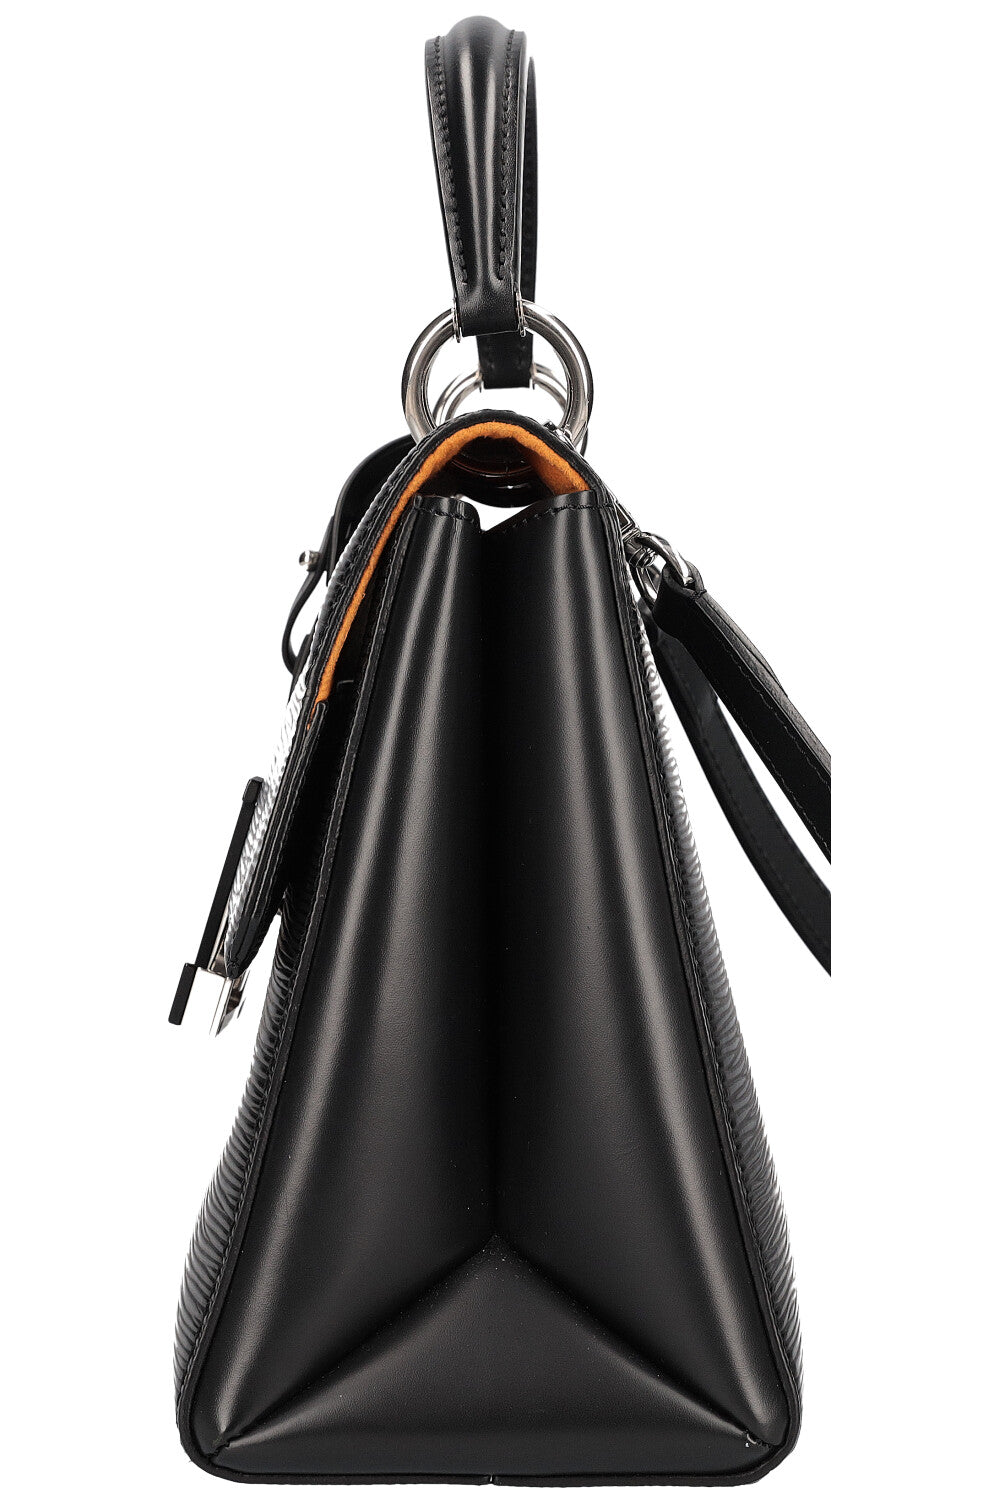 Grenelle PM Epi – Keeks Designer Handbags